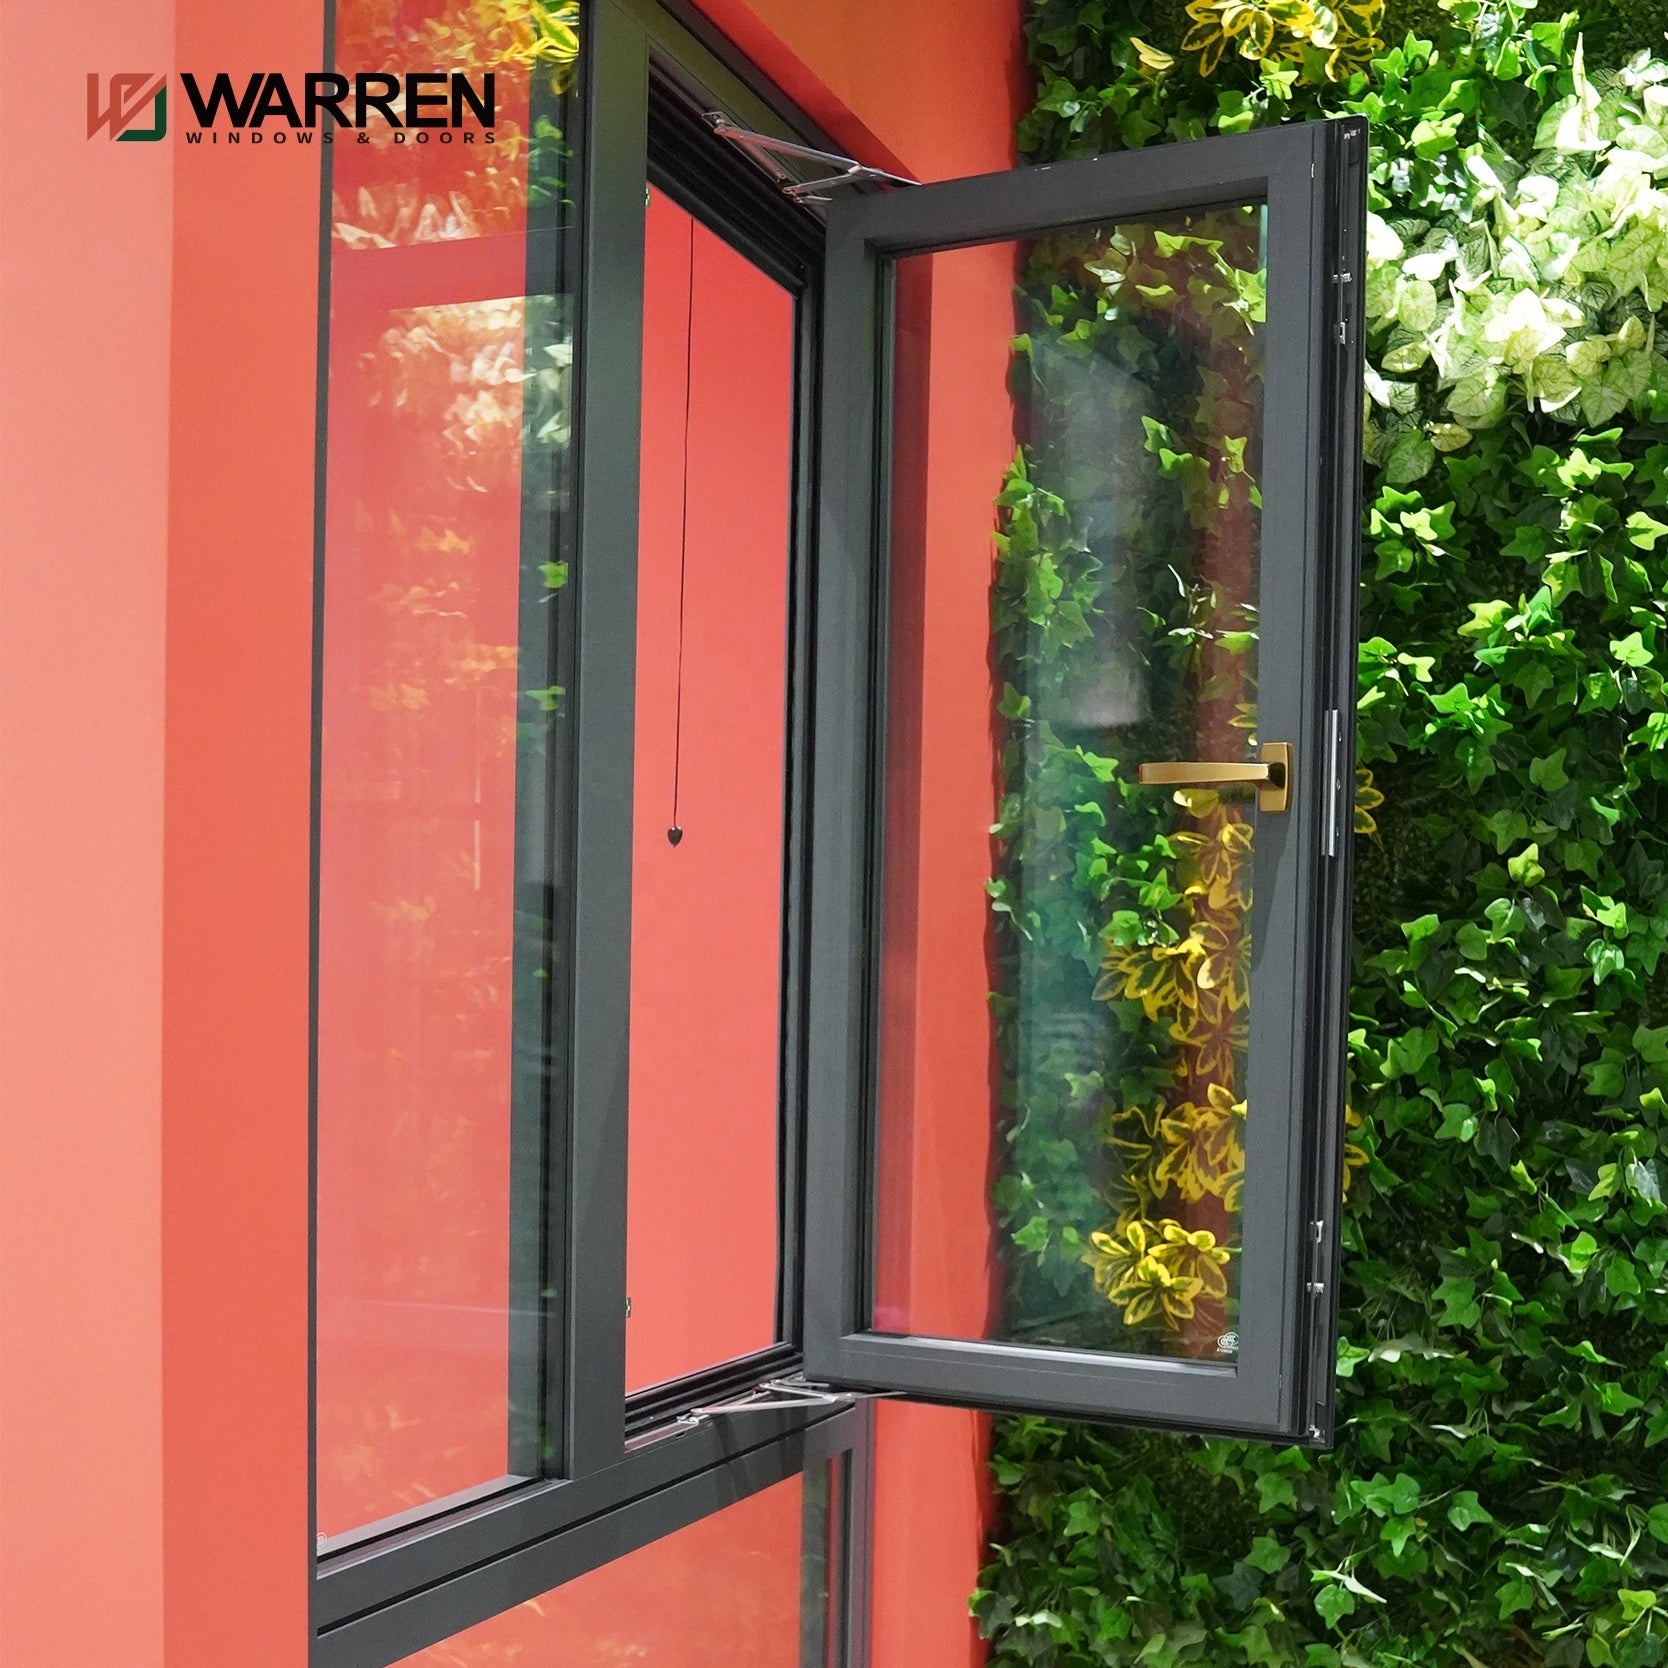 Warren bathroom casement window design aluminum double glass casement window glass window discount